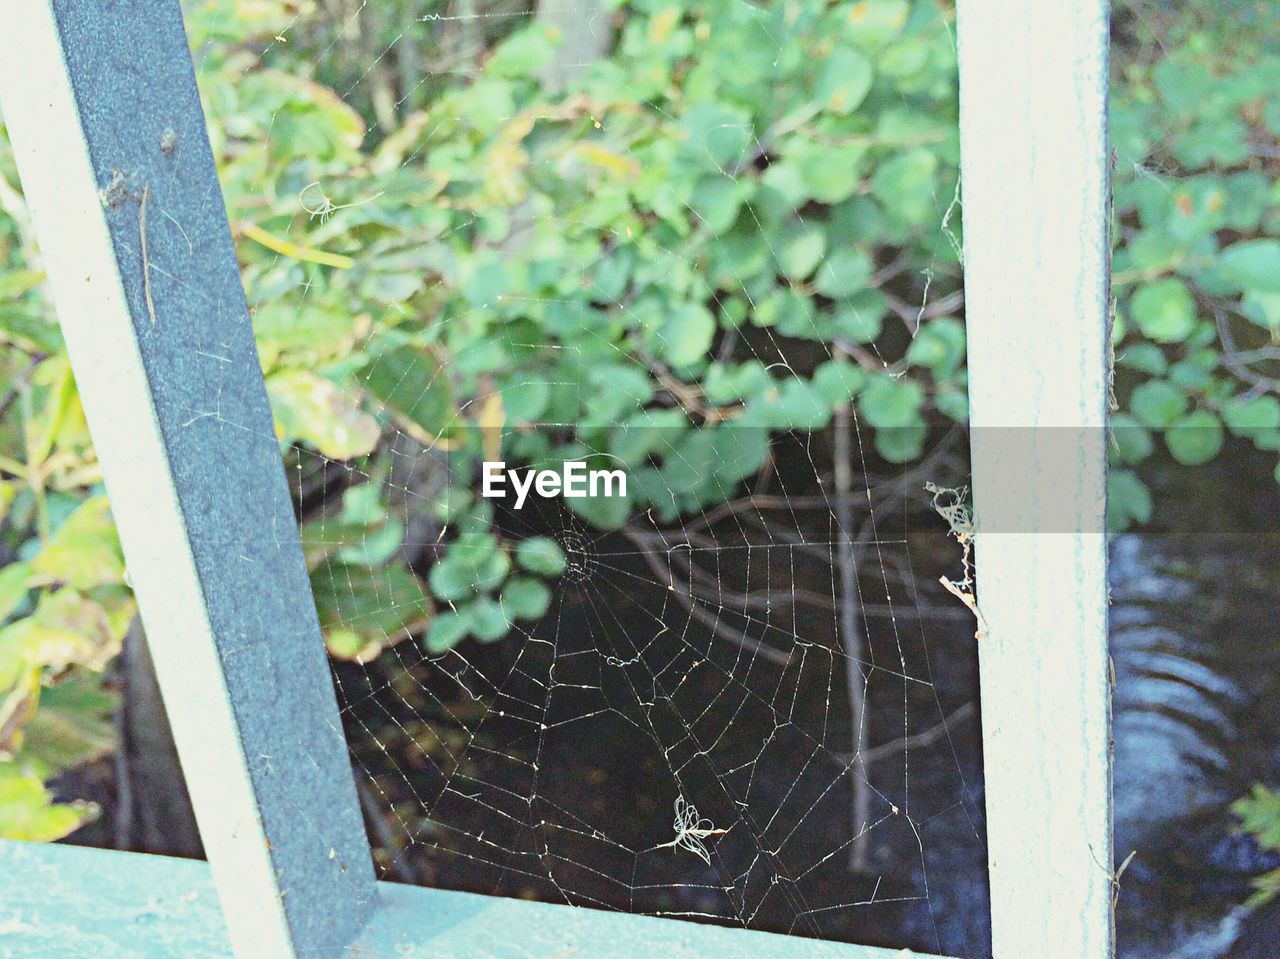 Spider webs along railing